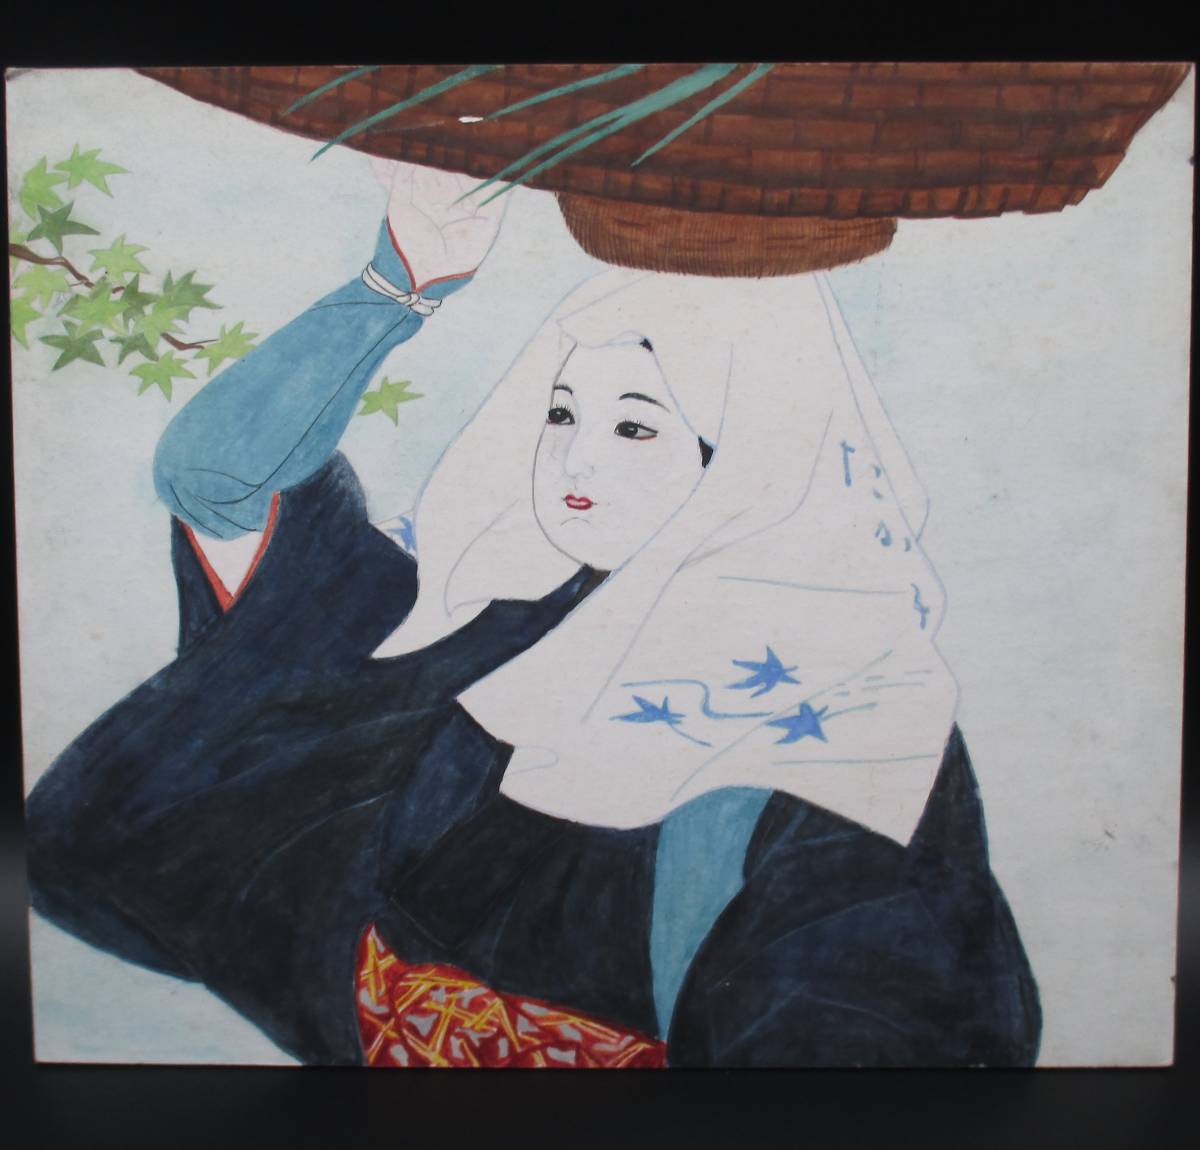 그림 수채화 그림 종이 보드에 수채화 여자와 그녀의 머리에 바구니, 그림, 수채화, 초상화